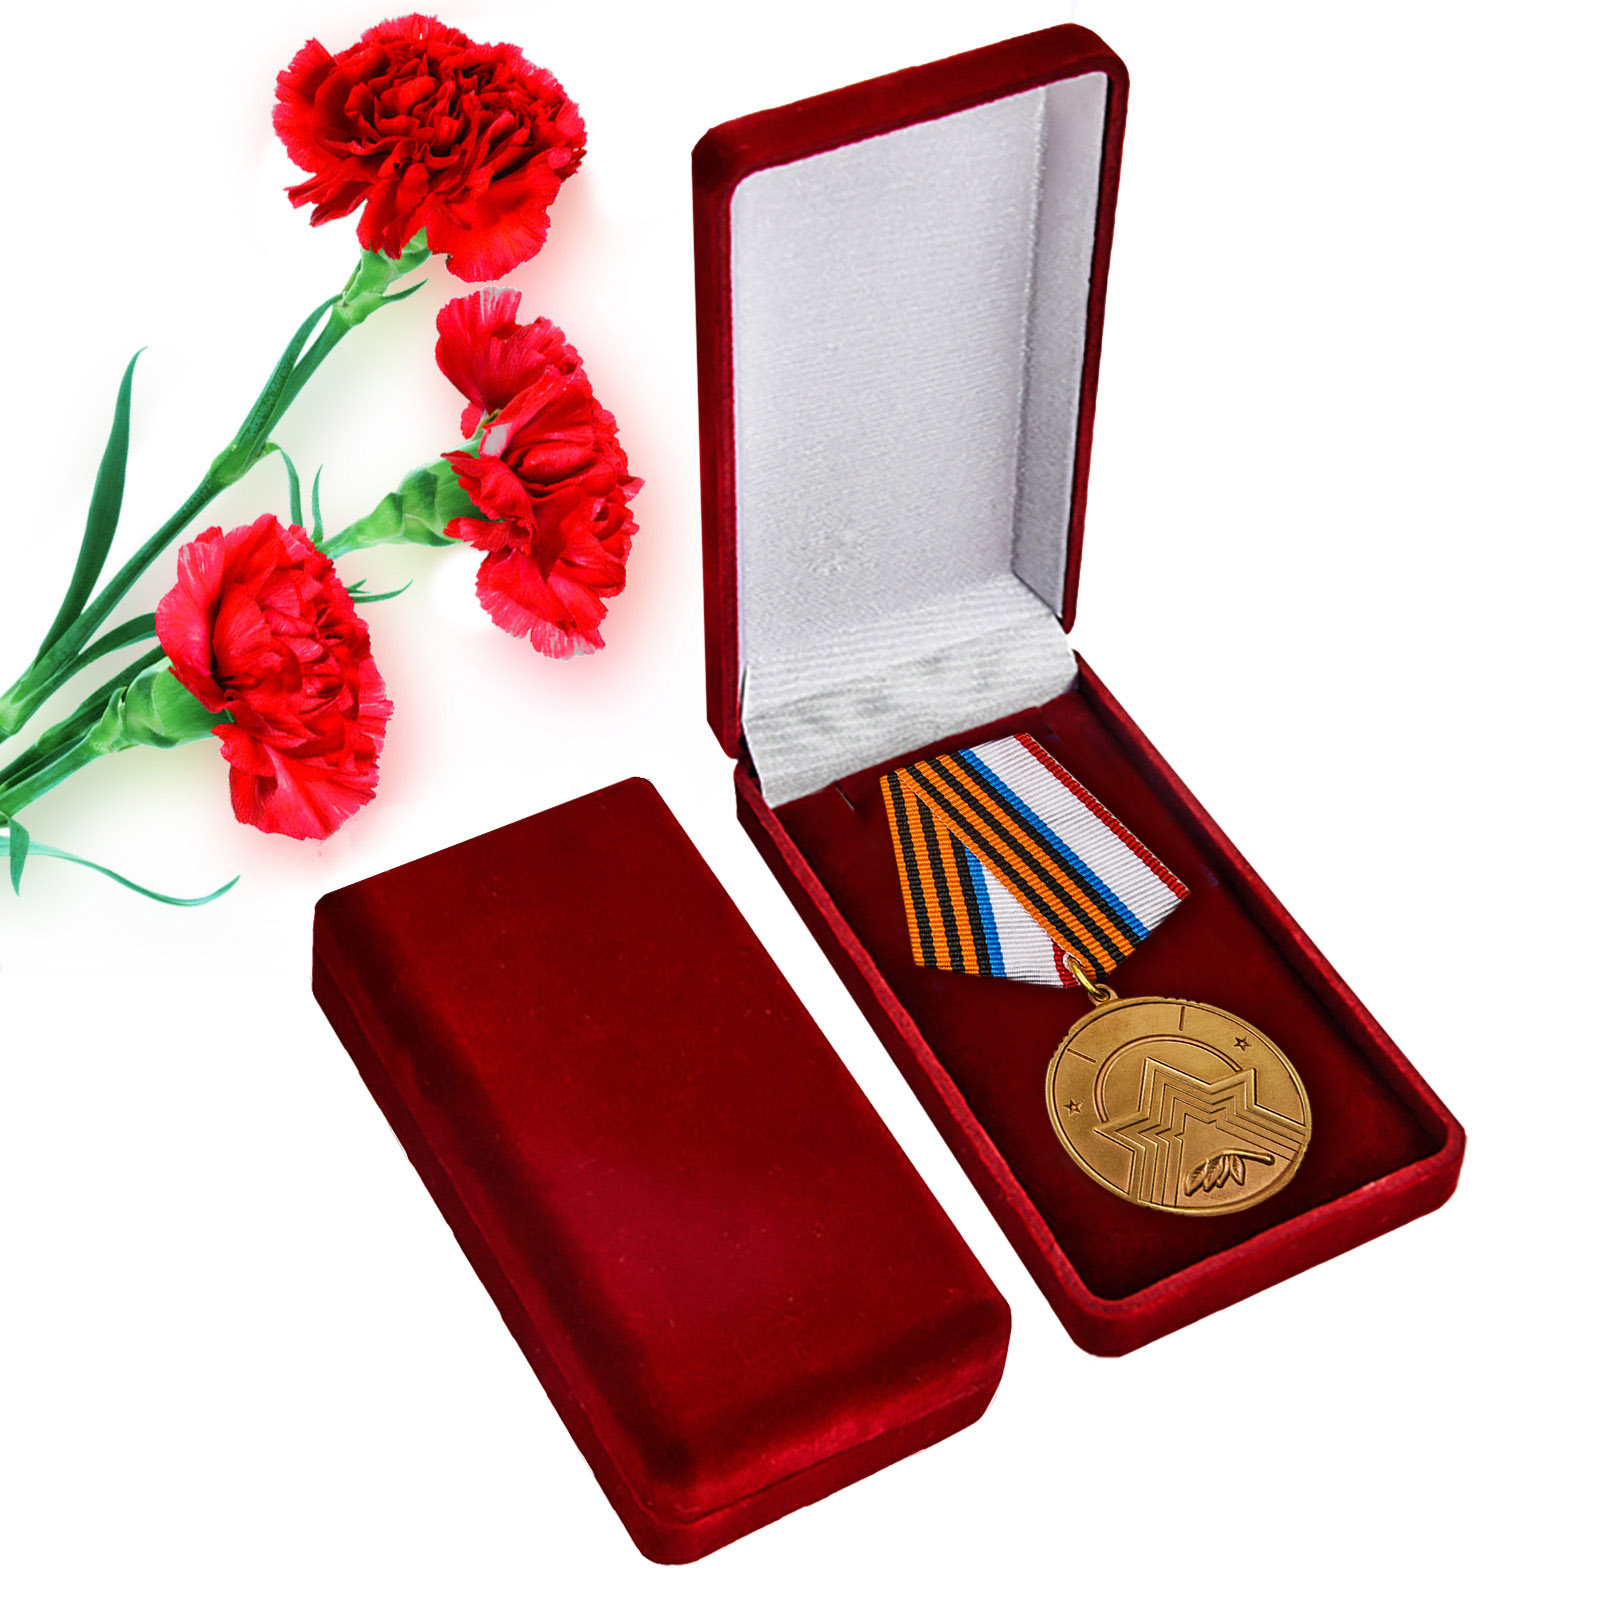 Купить медаль Республики Крым "За заслуги в поисковом деле" онлайн выгодно